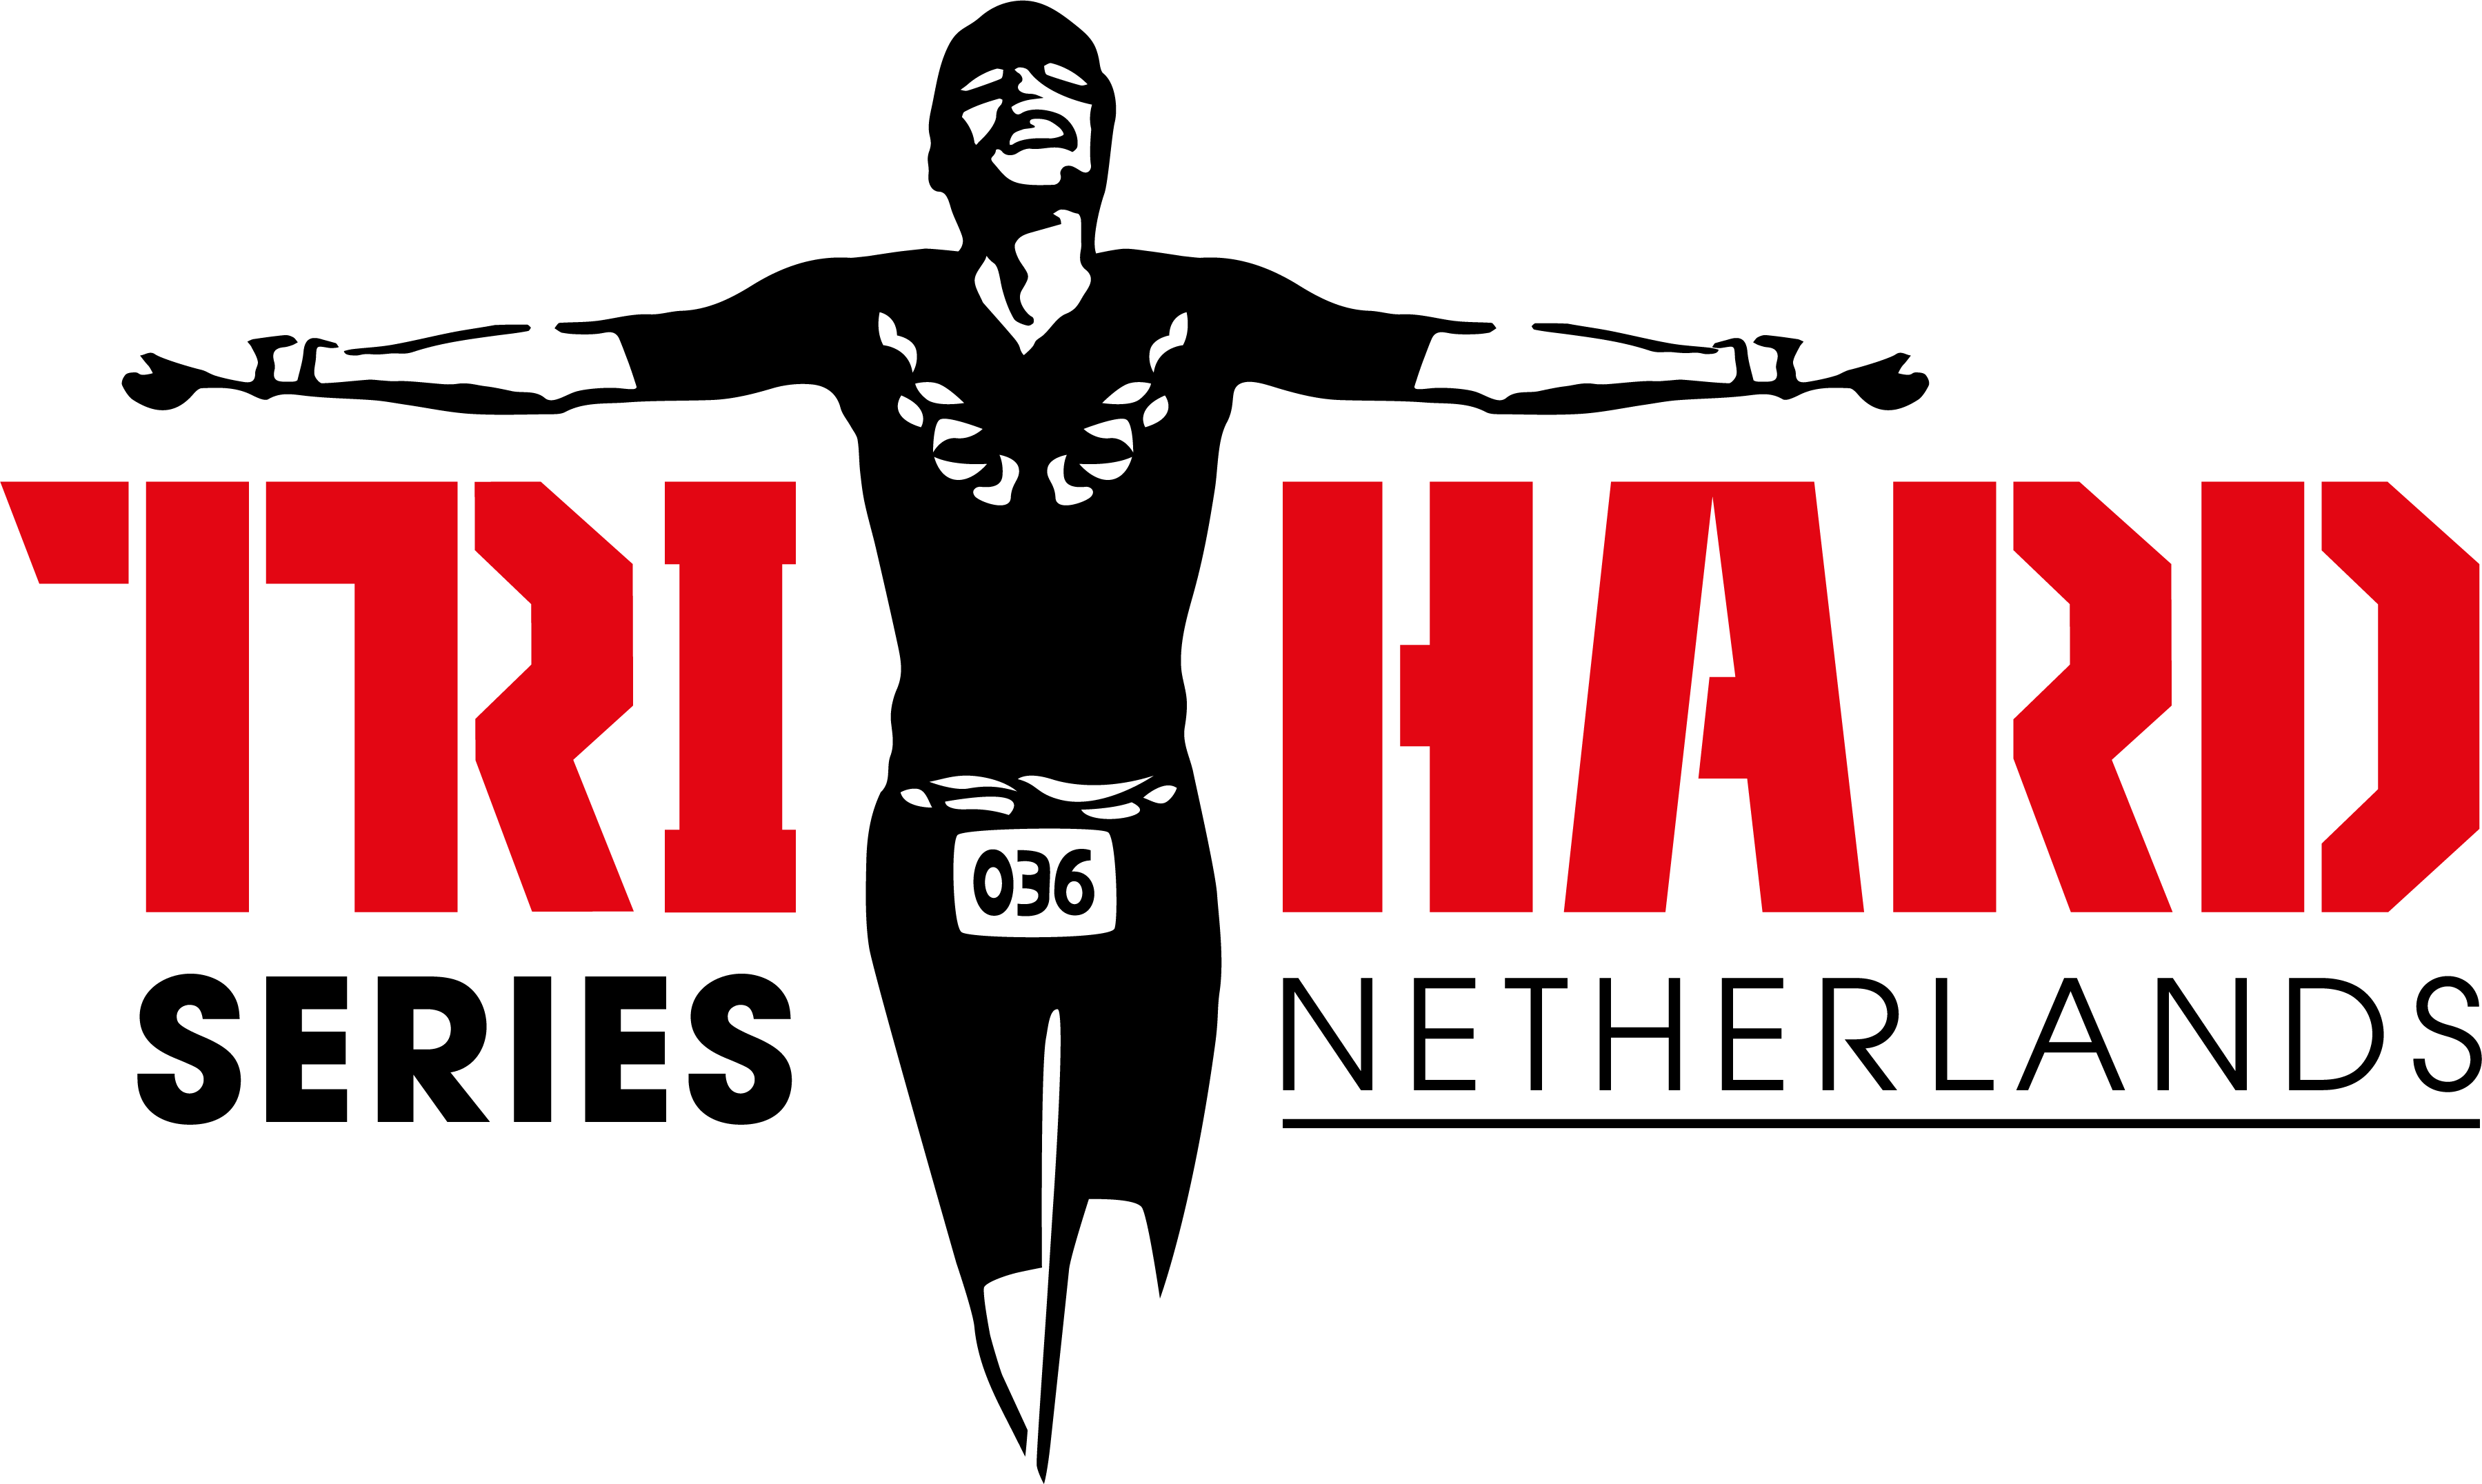 Triathlon series in The Netherlands